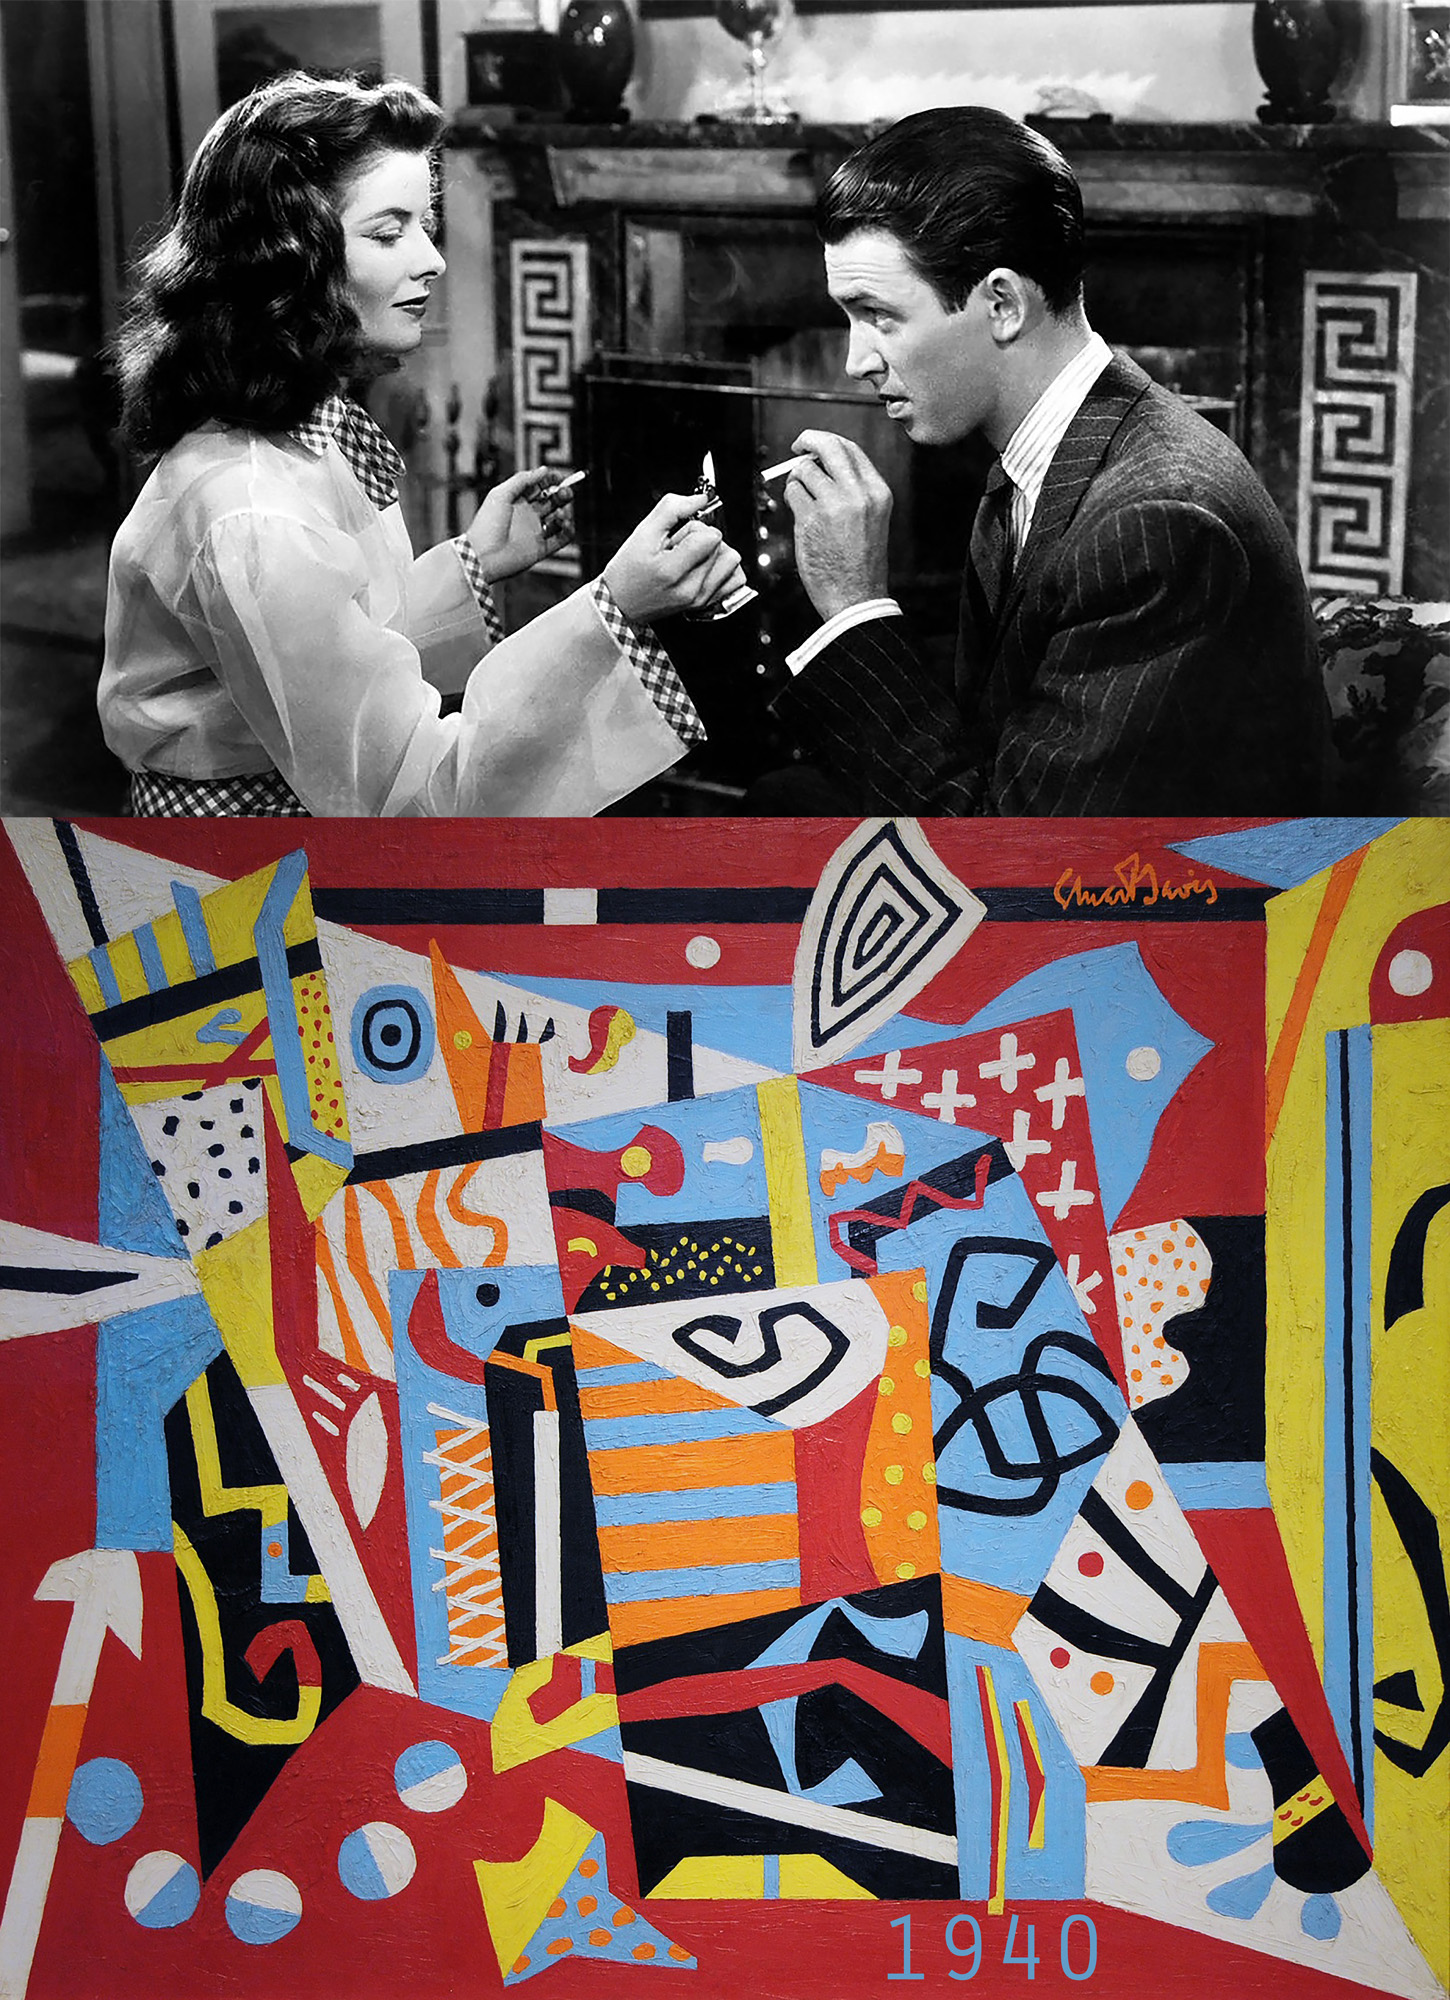 1940 - The Philadelphia Story / Stuart Davis, "Hot Still-Scape for Six Colors - 7th Avenue Style" - by Bonnie Lautenberg